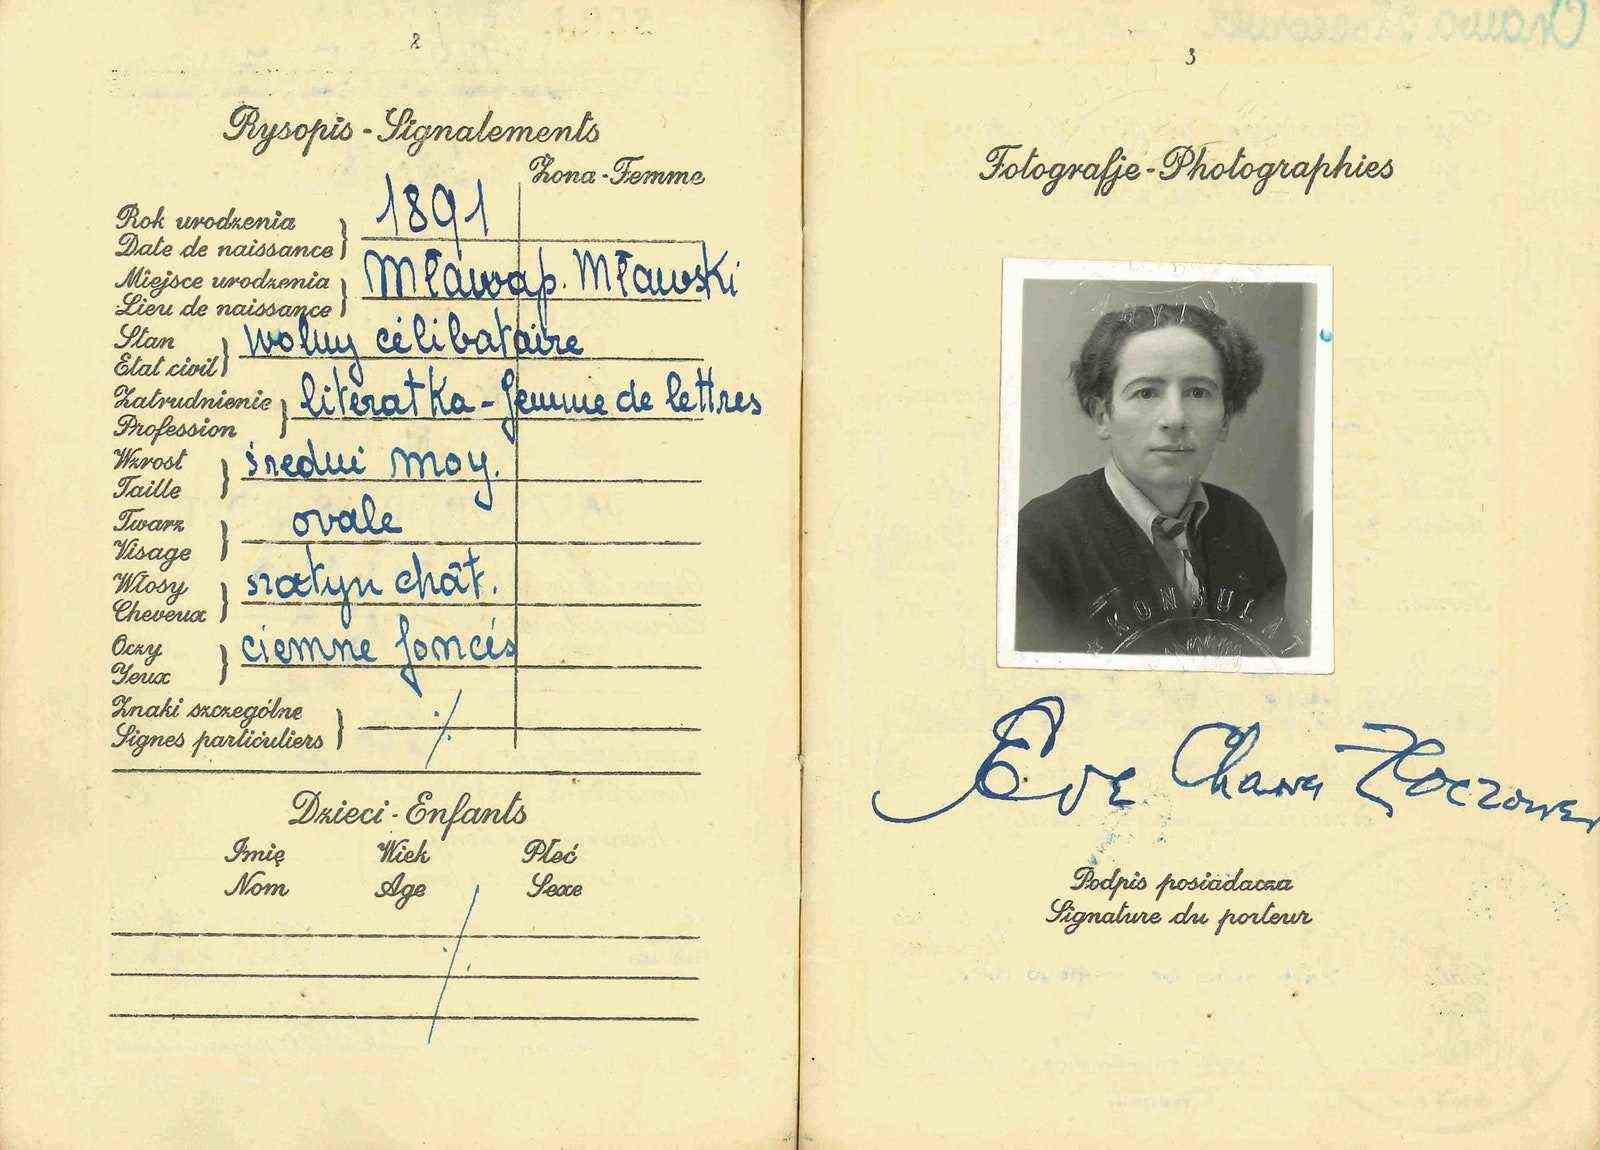 Ein kleines Foto von Eve Adams erscheint auf einer Passseite.